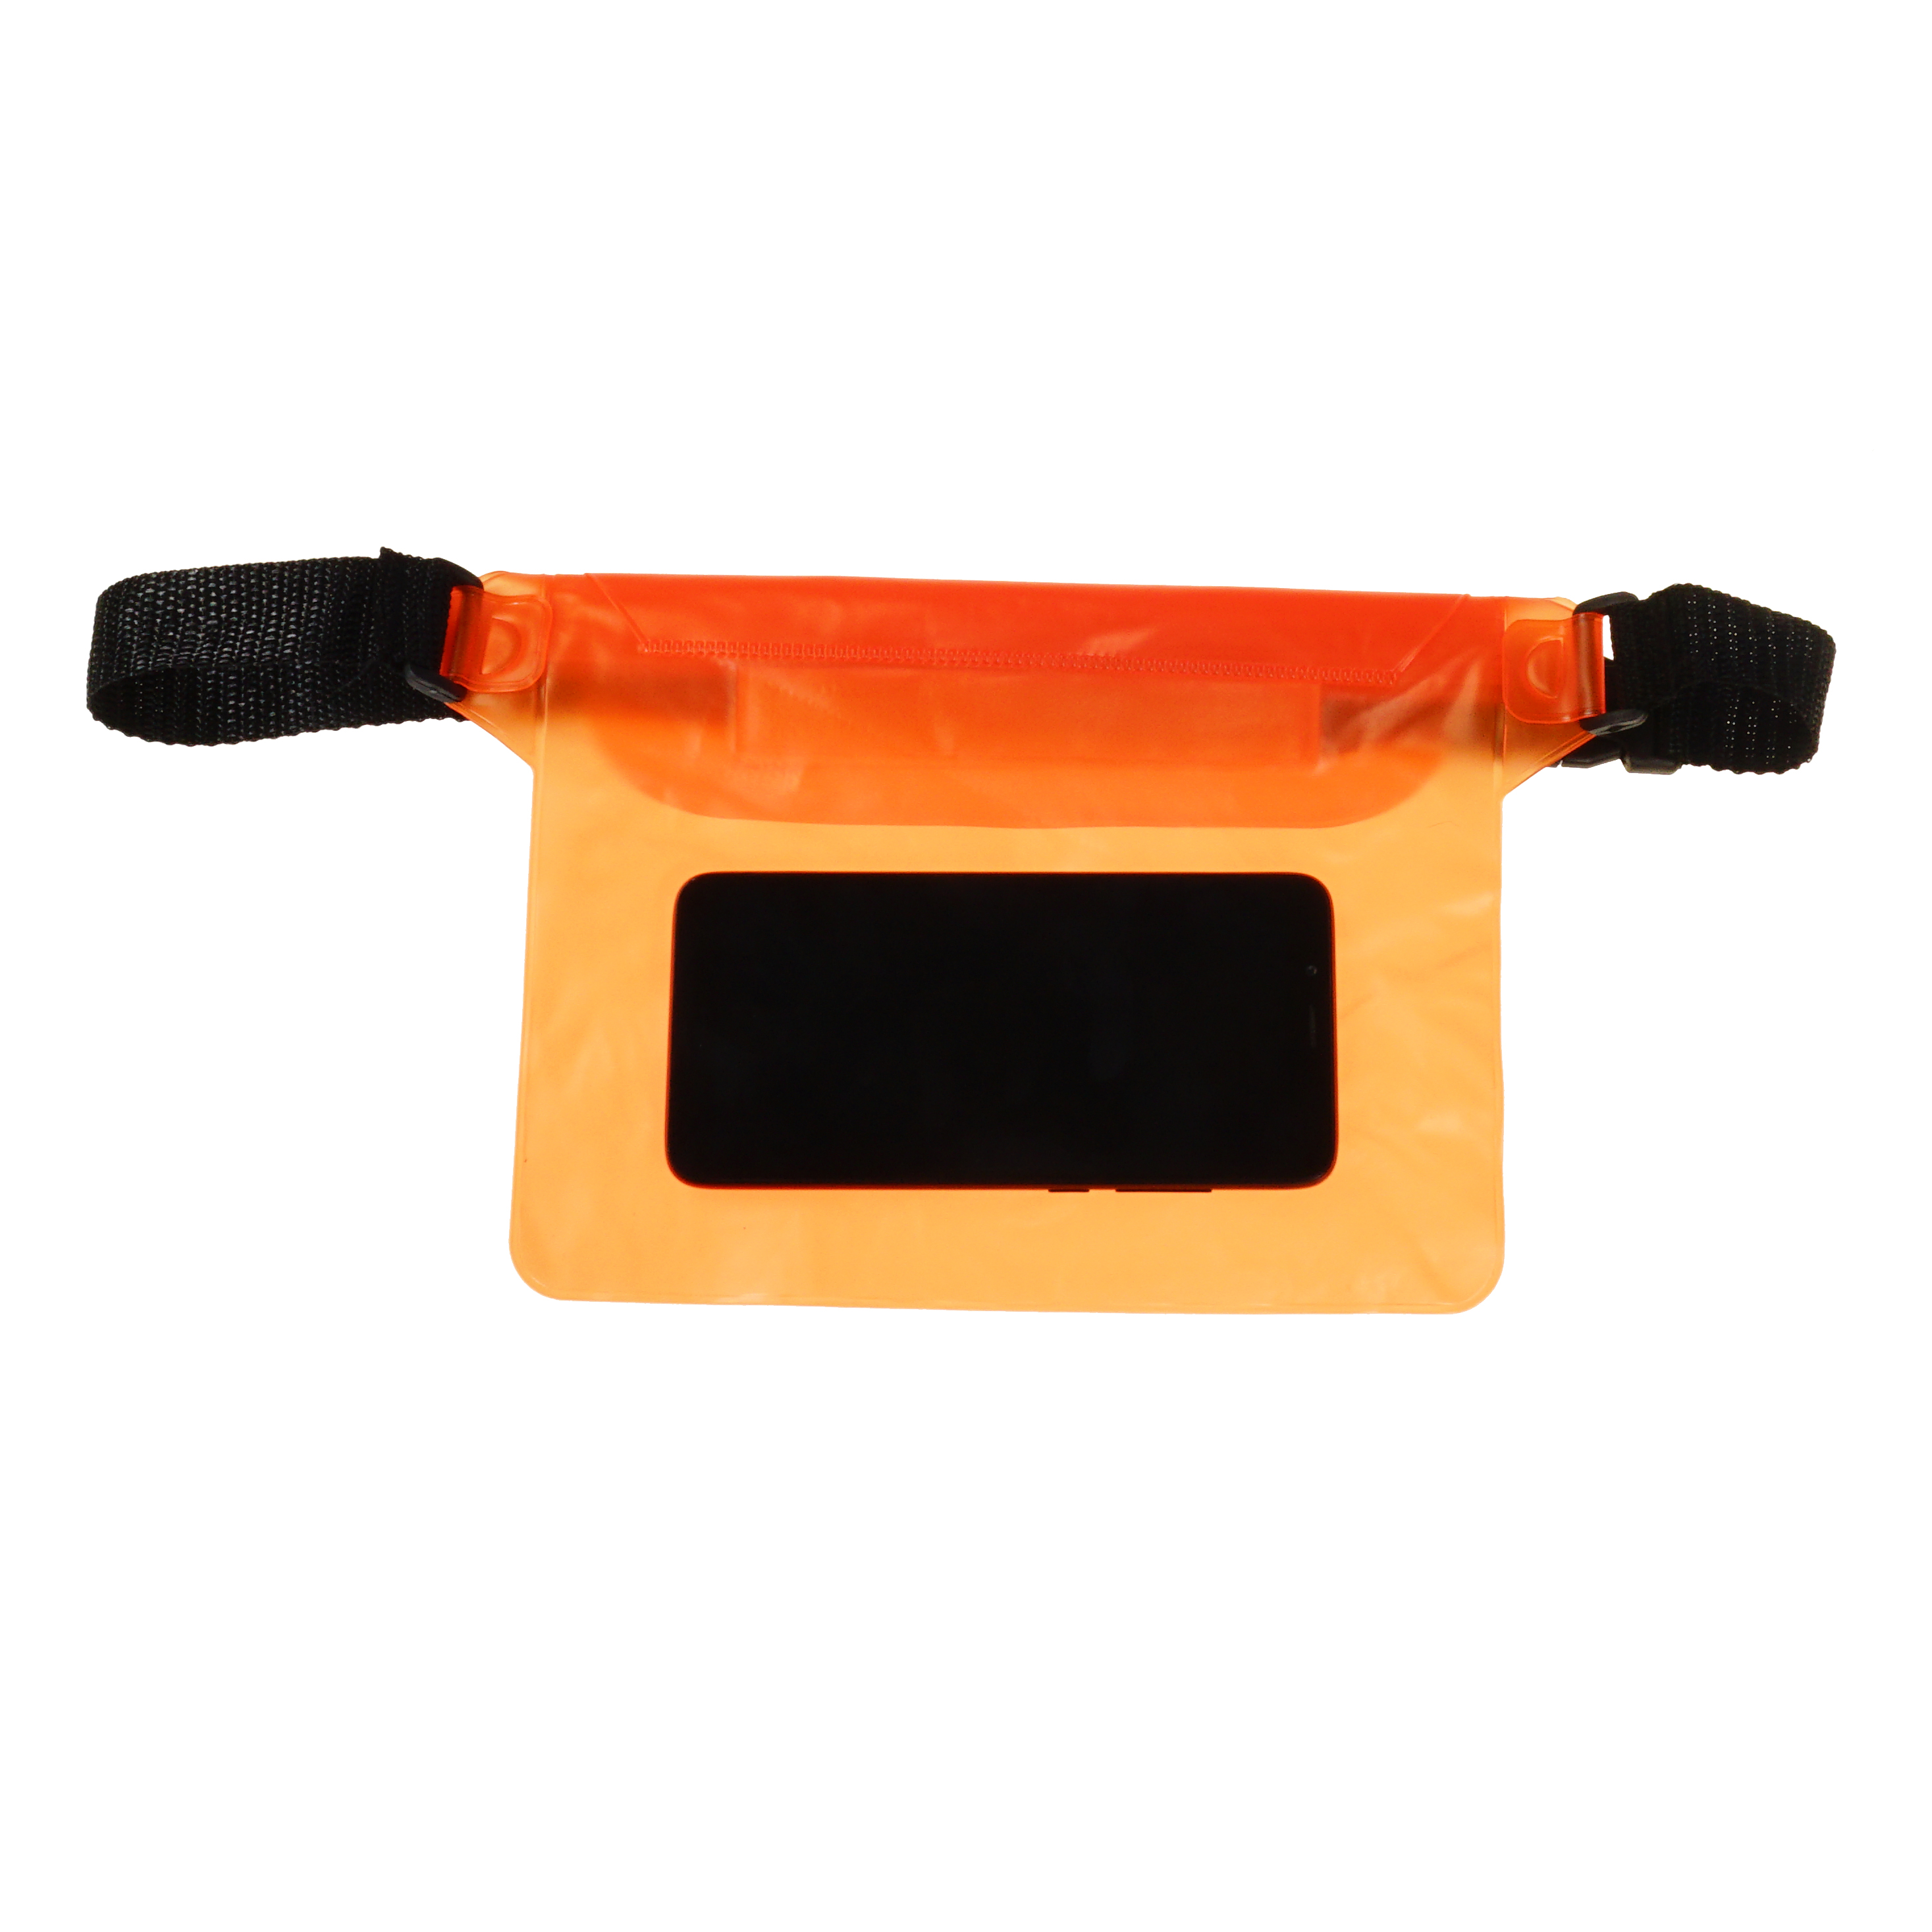 Акция на Поясна сумка чохол Supretto водонепроникна, помаранчева (71390005) от Wellamart